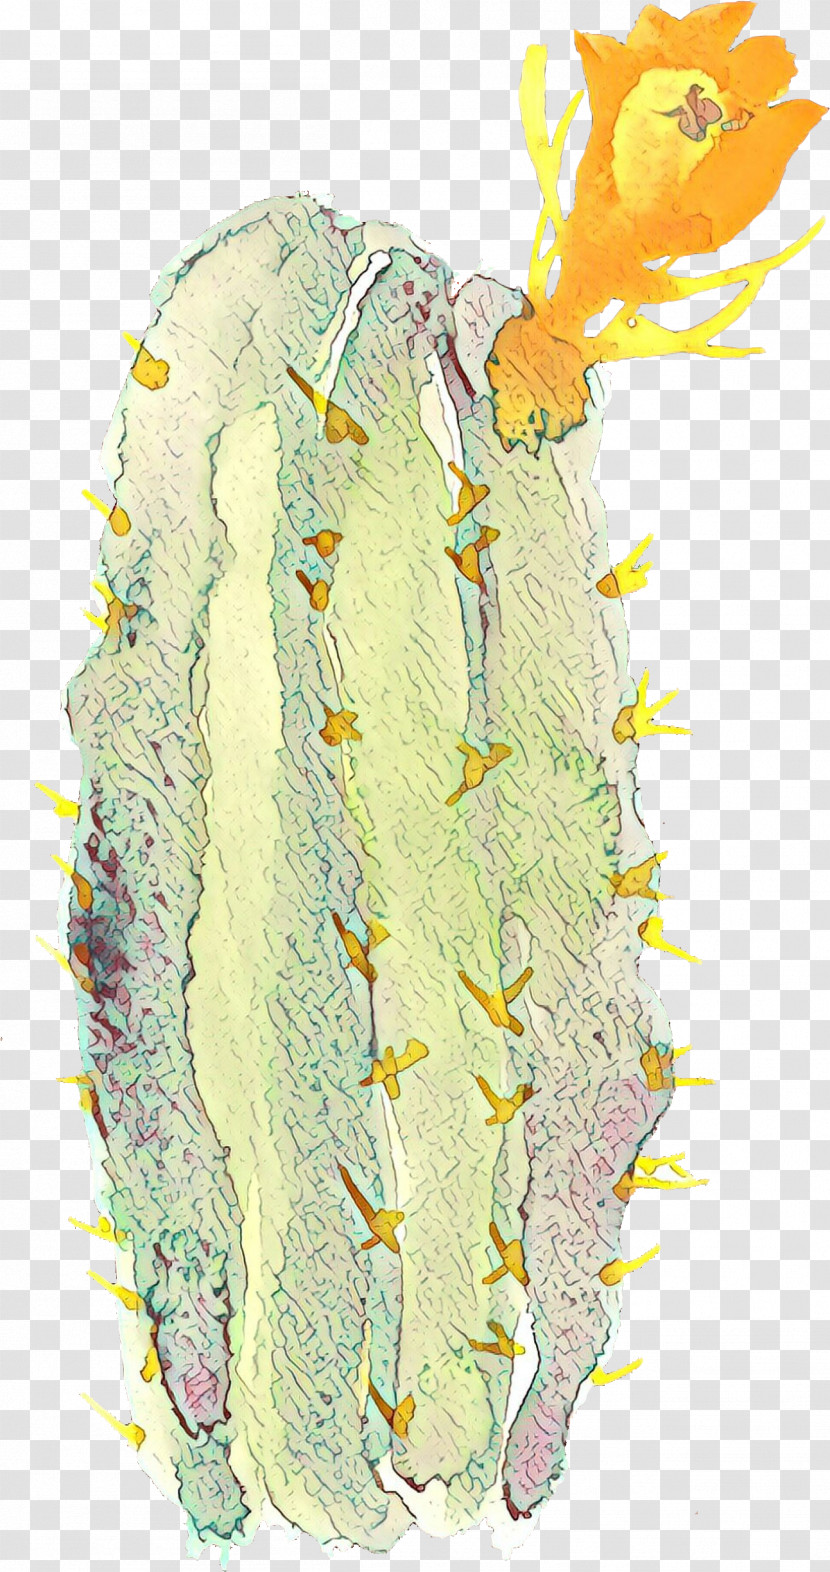 Cactus Transparent PNG